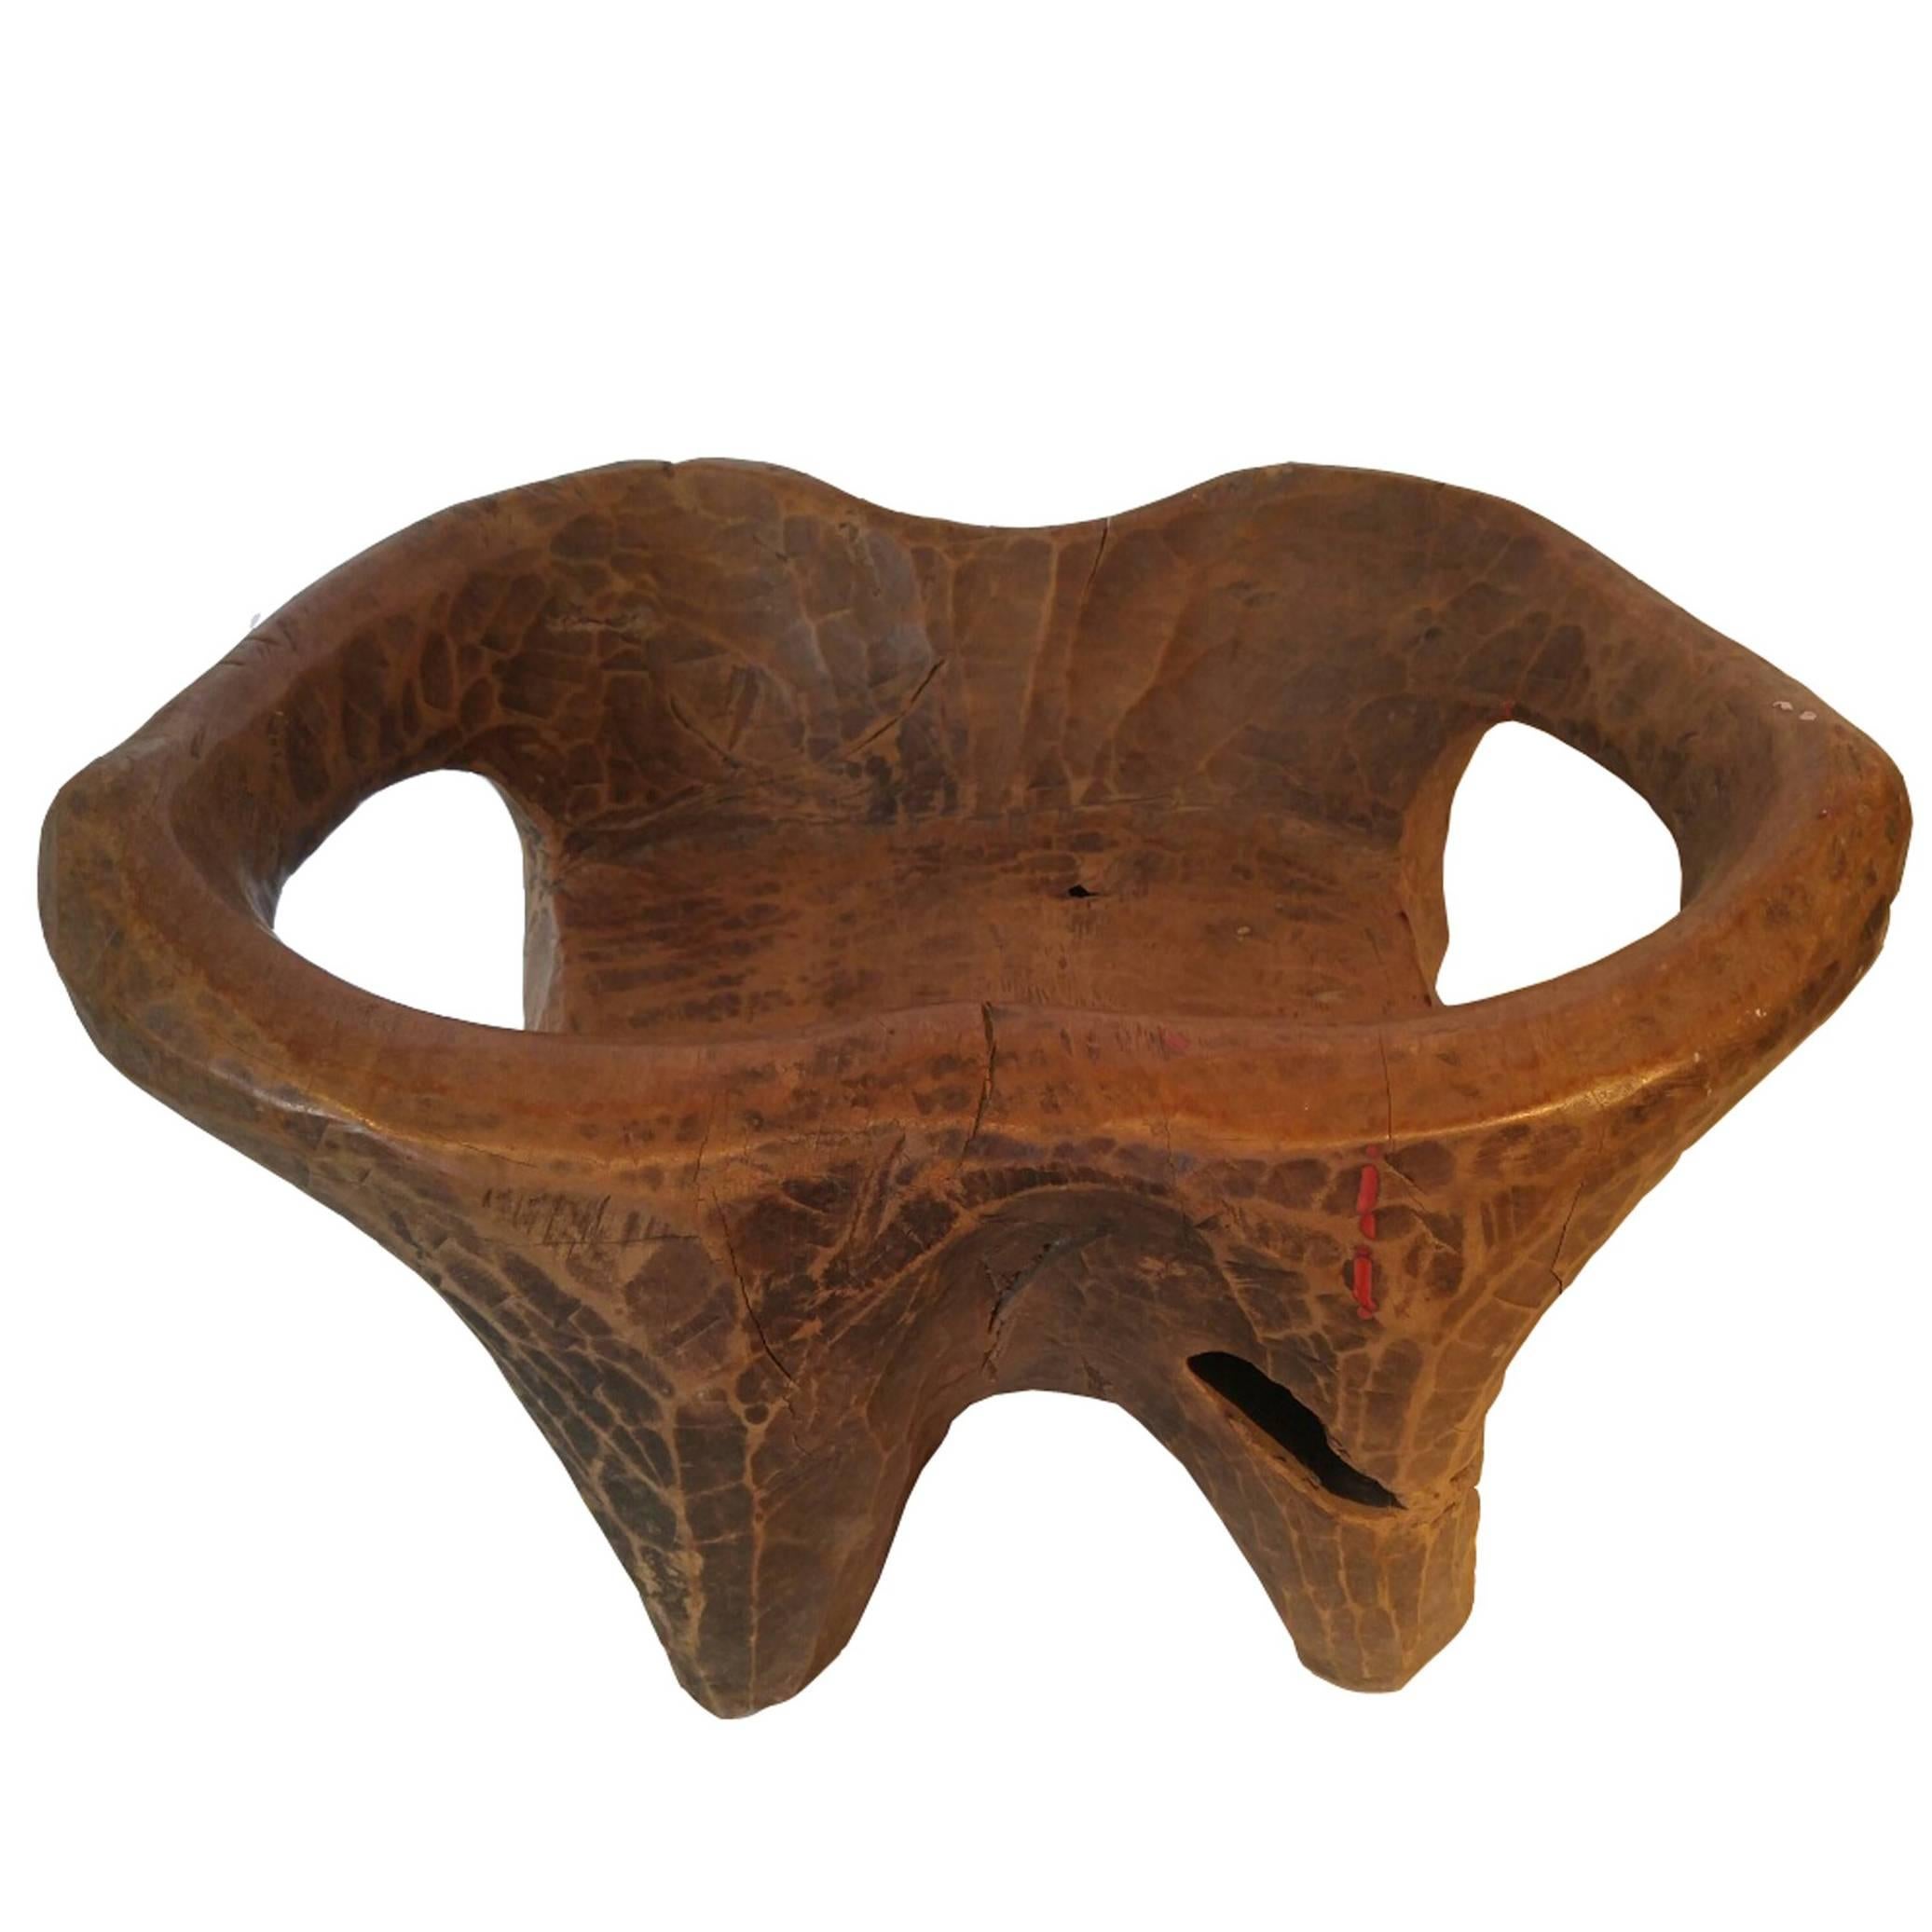 Tabouret en teck sculpté à la main, table basse ou support avec bras incurvés